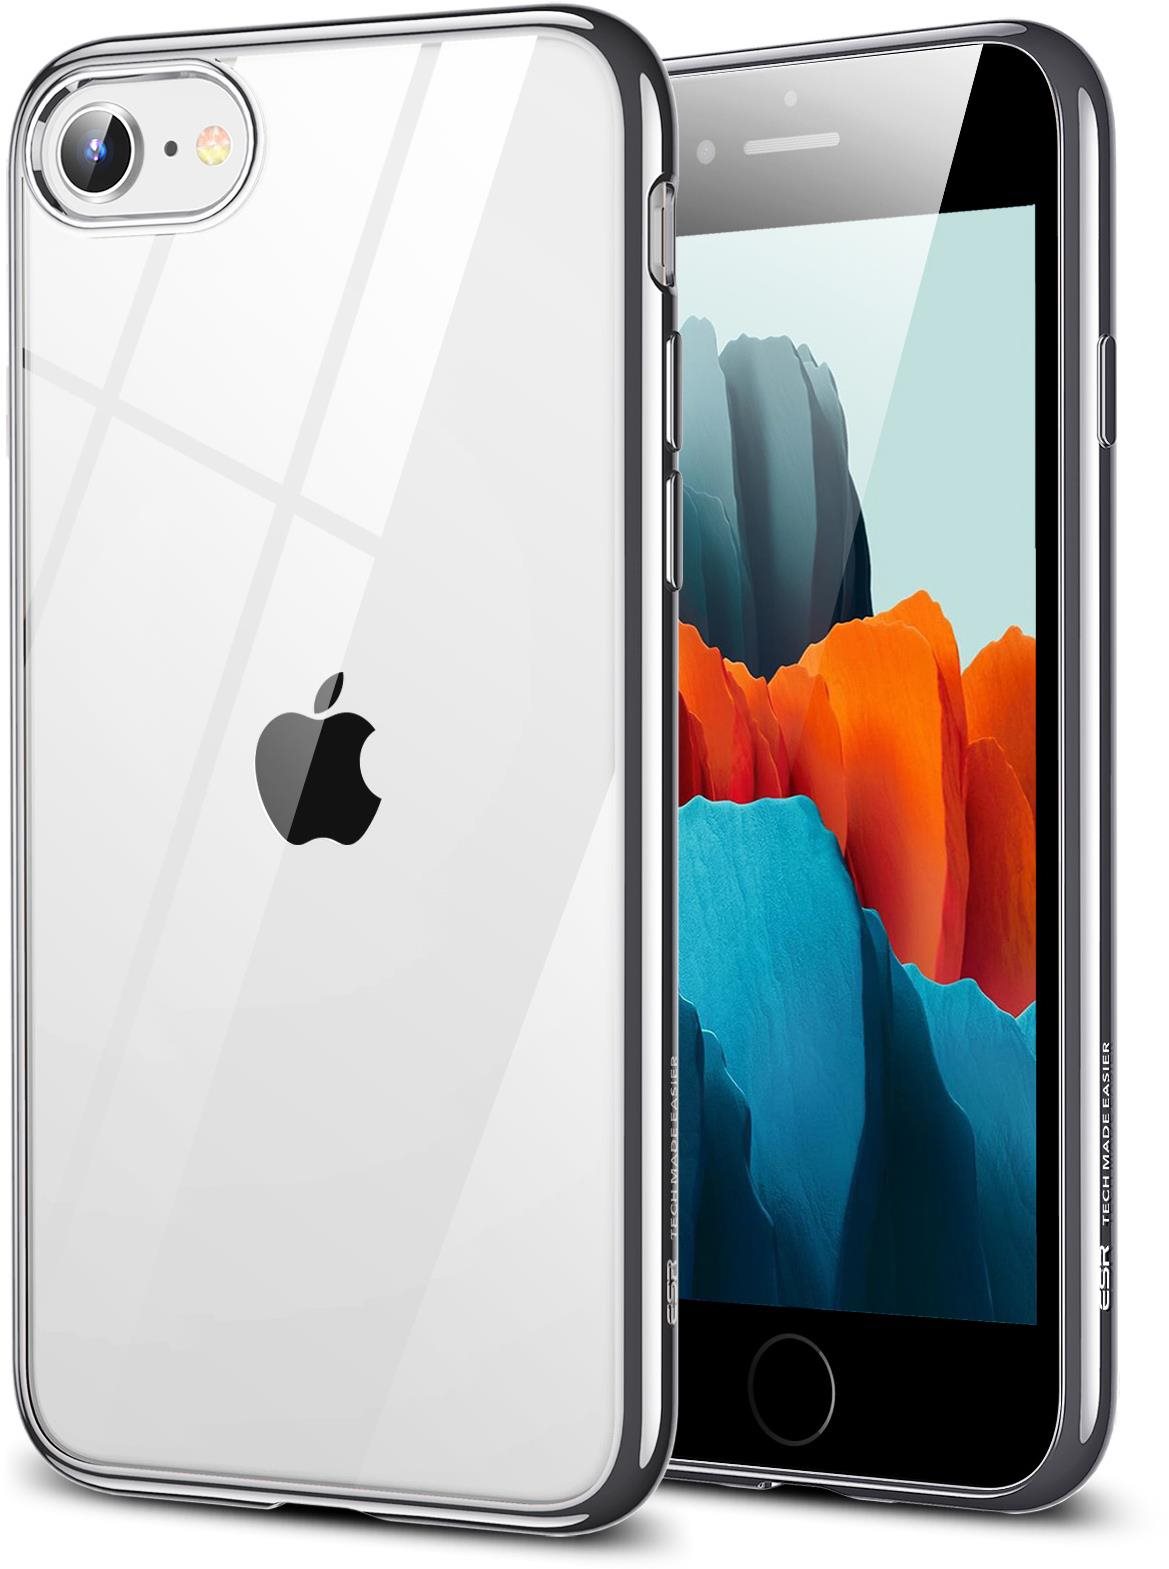 ESR Halo Silver iPhone SE 2022